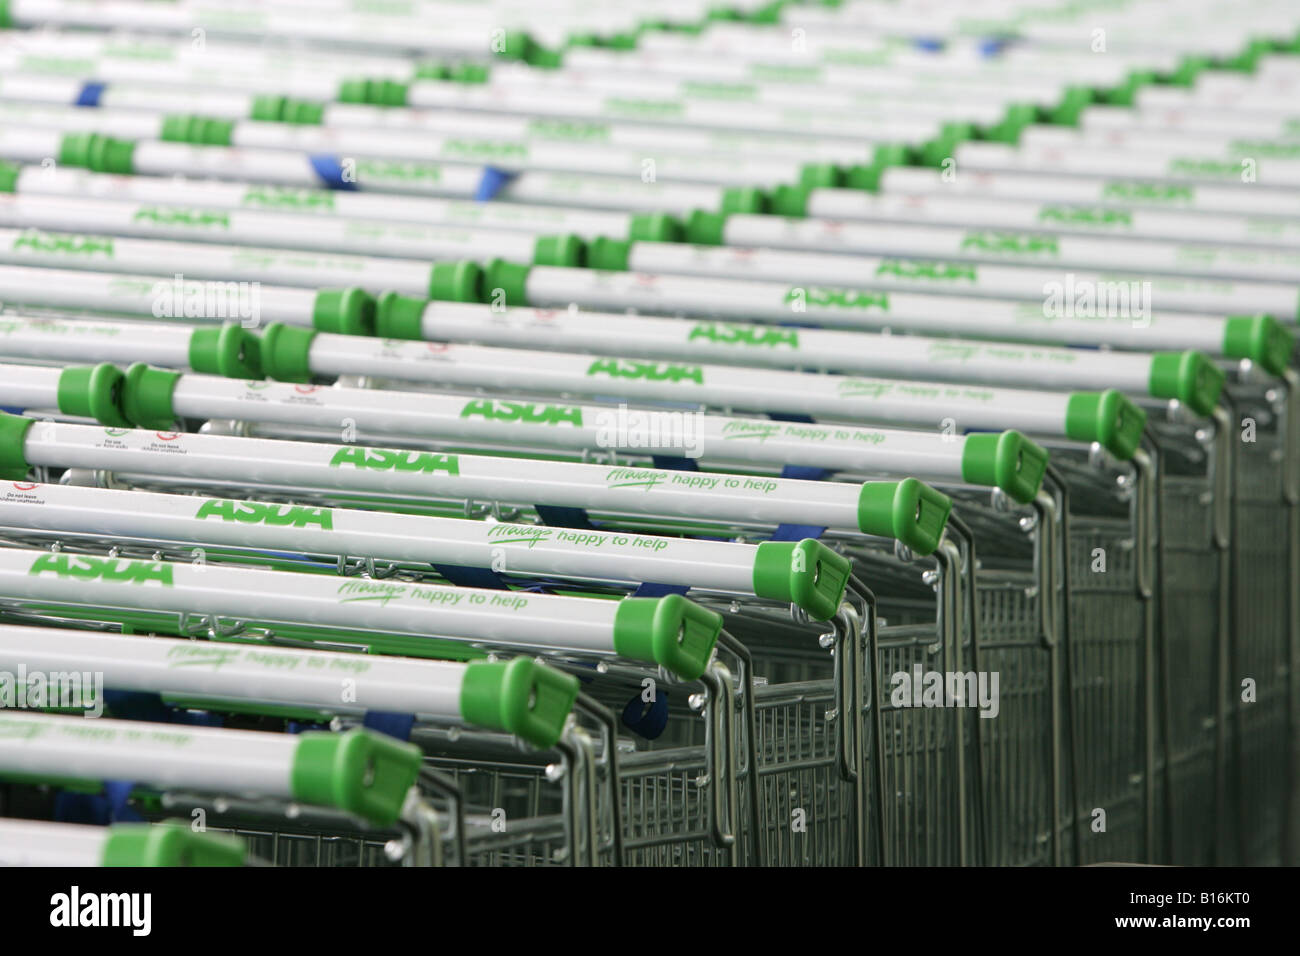 Asda shopping trolleys. Stock Photo